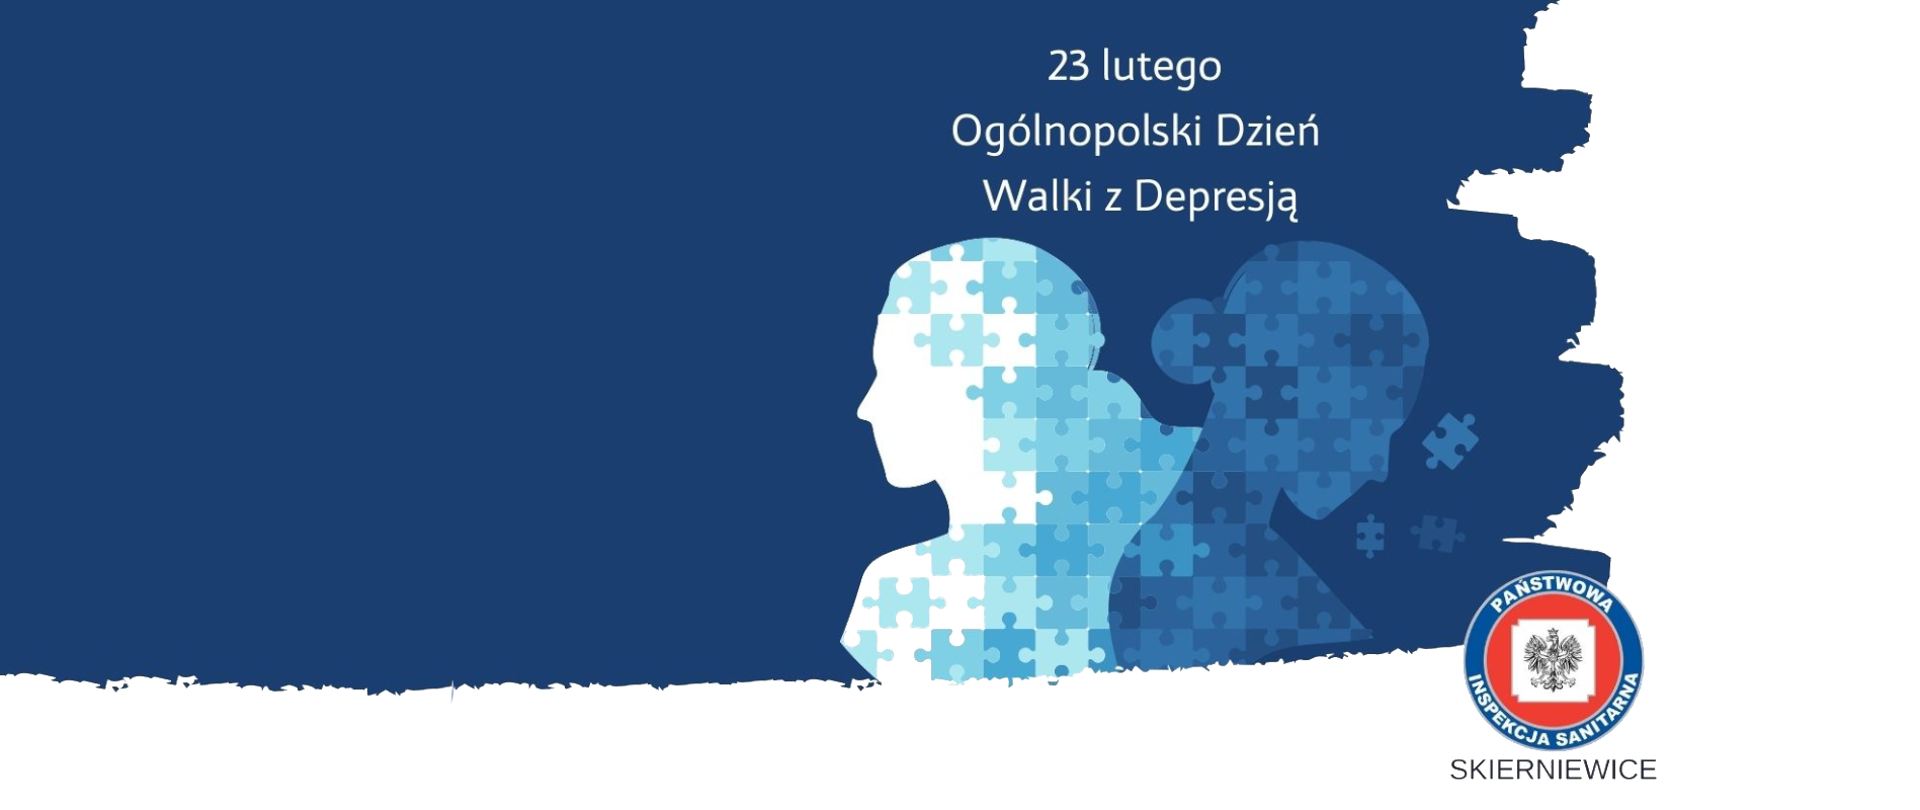 Grafika przedstawia 2 postacie na niebieskim tle symbolizujące emocjonalne załamanie pod wpływem depresji nad nimi znajduje się napis "23 Lutego Ogólnopolski Dzień Walki z Depresją", w prawym dolnym rogu znajduje się logo stacji w Skierniewicach.